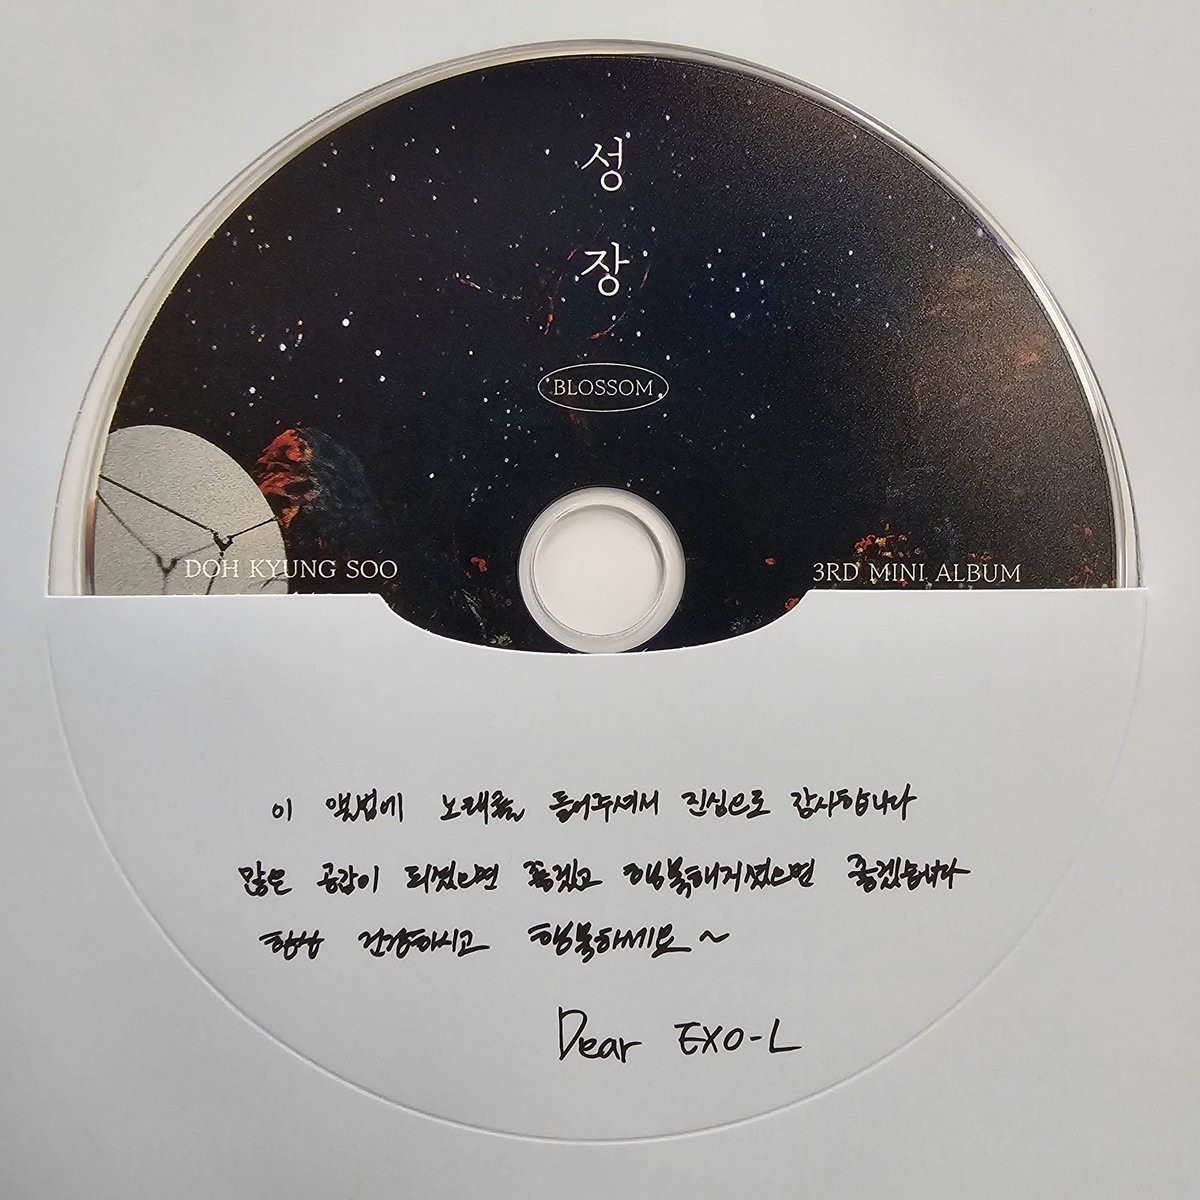 240508| رسالة كيونقسو على ألبومه الثالث 'BLOSSOM' -

'أعزائي الاكسوالز،

شكرََا لكم على استماعكم للأغاني في هذا الألبوم. أتمنى أن يستطيع الاتصال بكم و أن يجعلكم سعداء. دائمََا كونوا سعداء و أصحّاء~' 

@weareoneEXO
-P